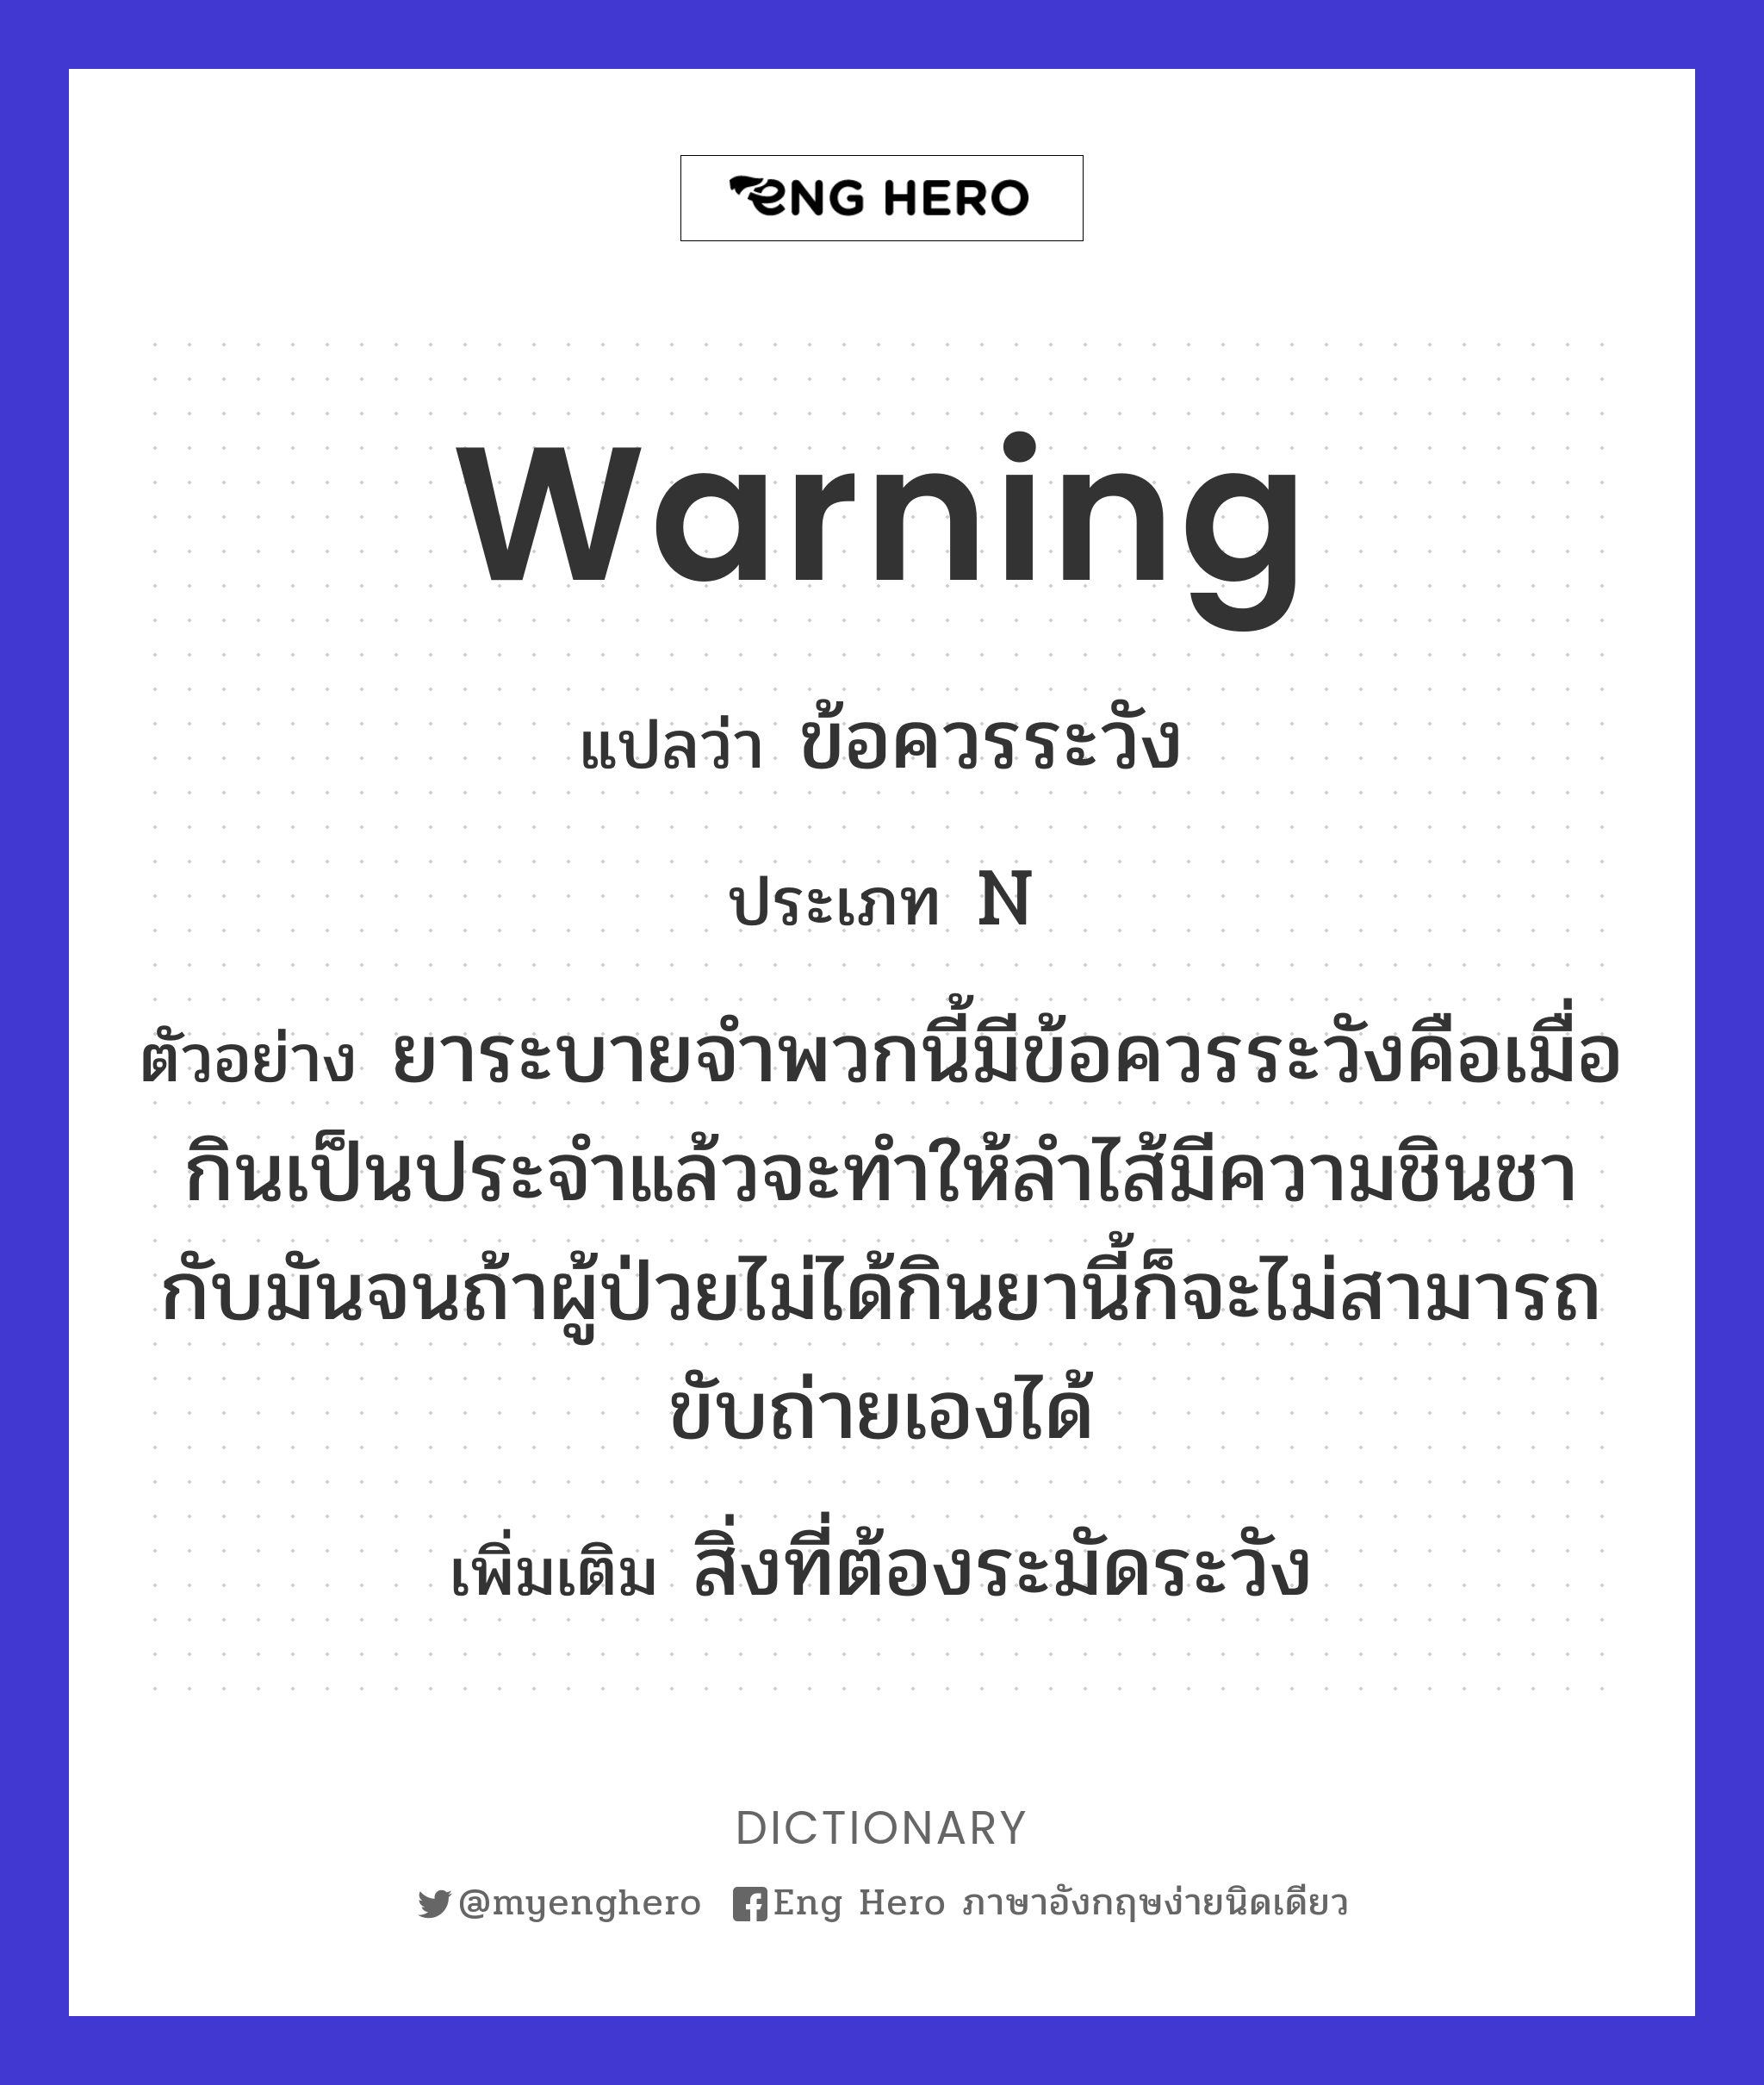 warning